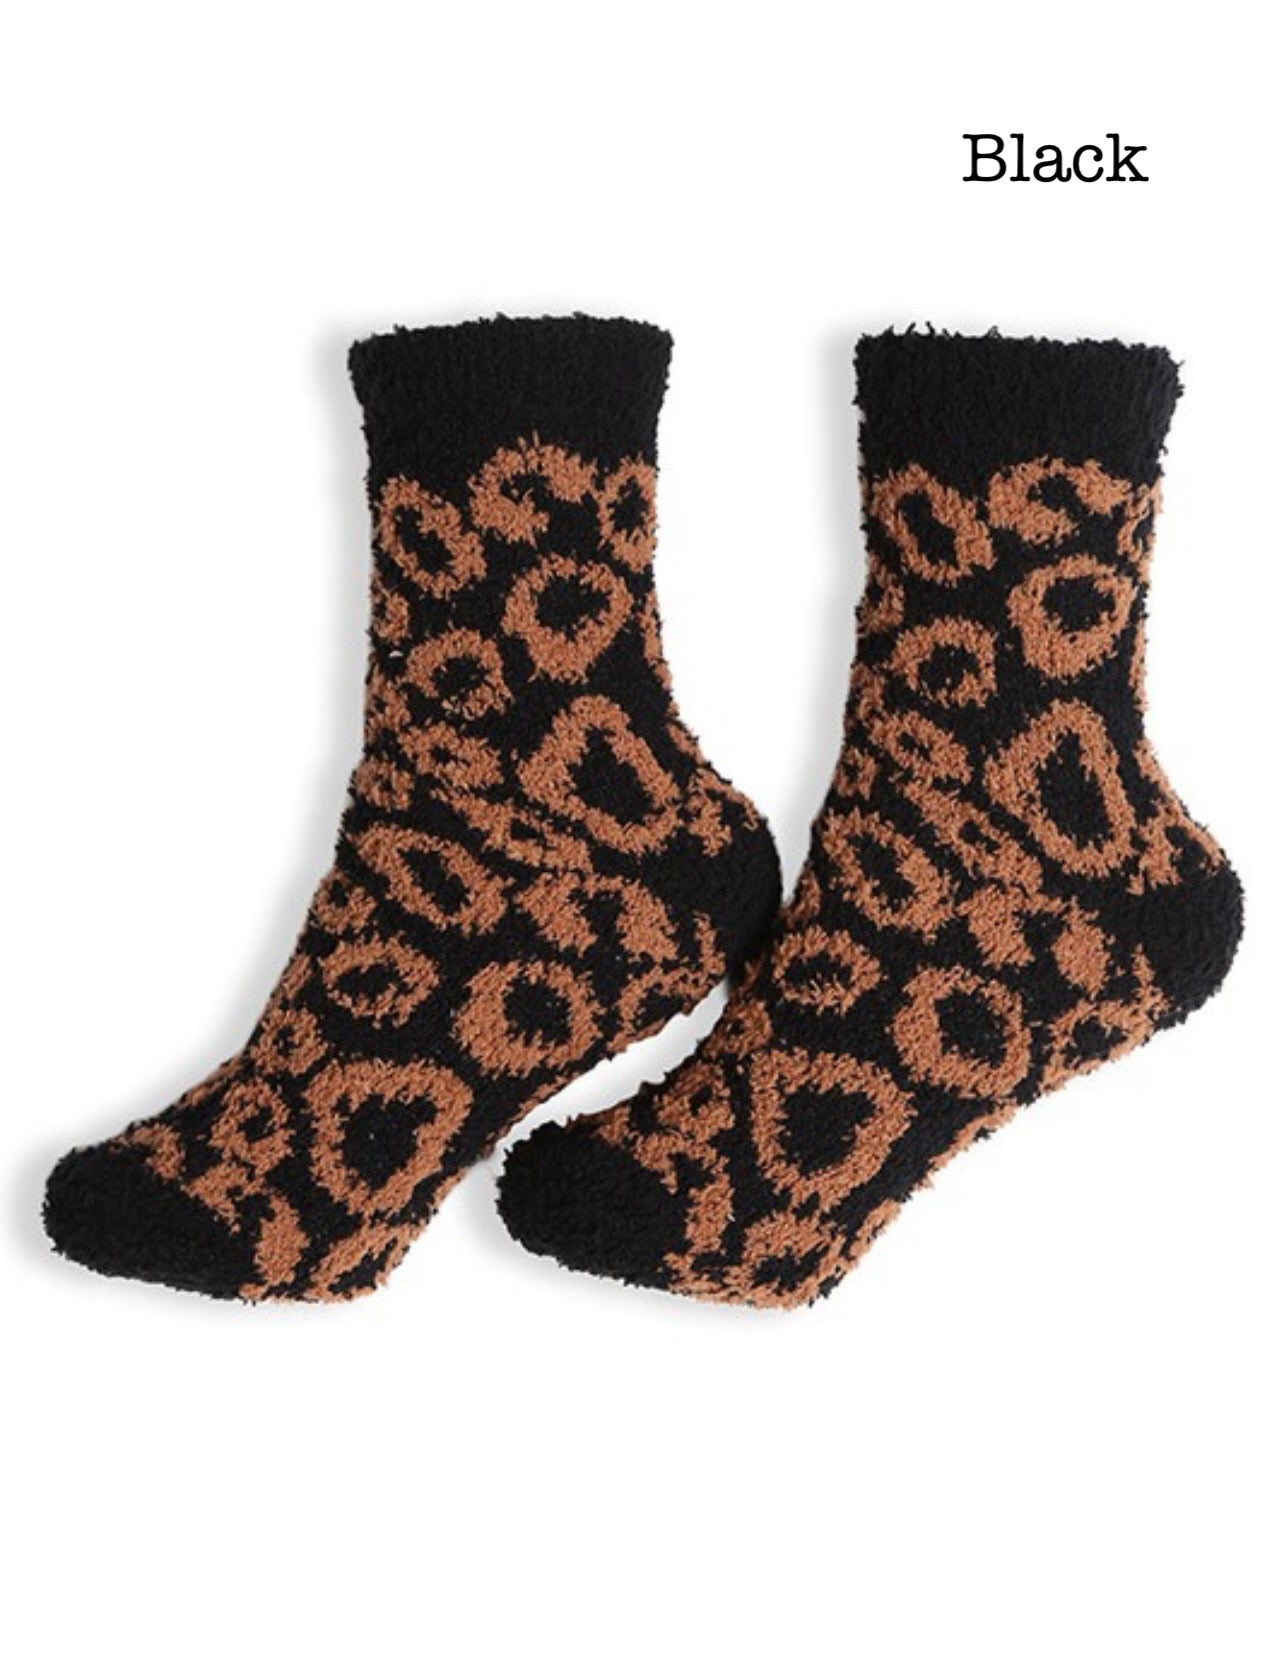 Leopard Mini Crew Socks